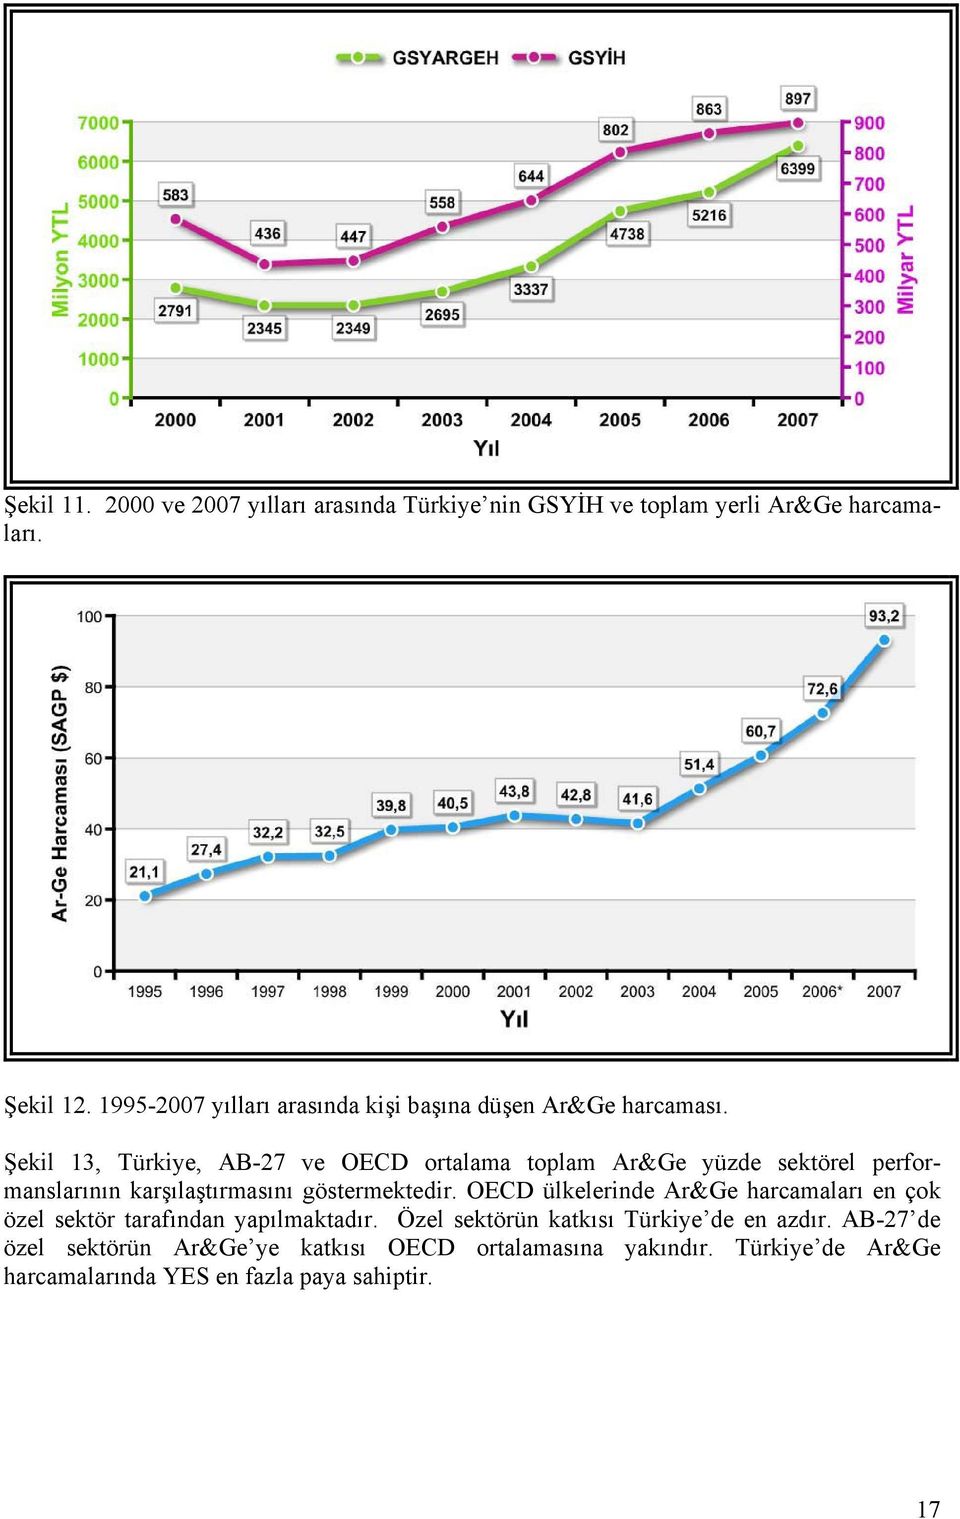 Şekil 13, Türkiye, AB-27 ve OECD ortalama toplam Ar&Ge yüzde sektörel performanslarının karşılaştırmasını göstermektedir.